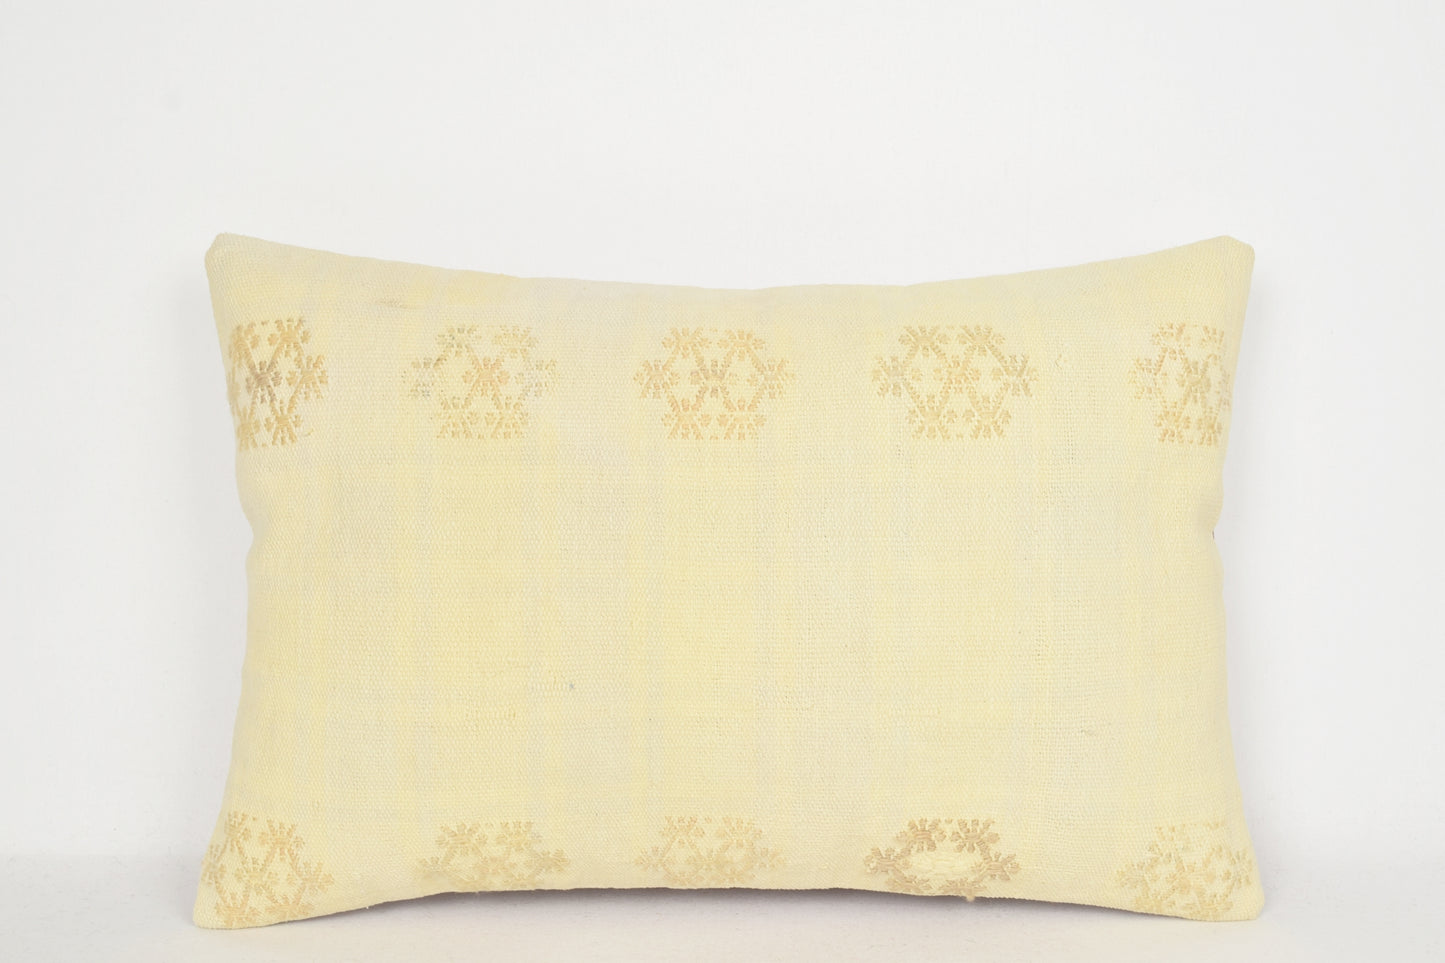 Turkish Outdoor Pillows E00279 Lumbar Southwest Historical Soft